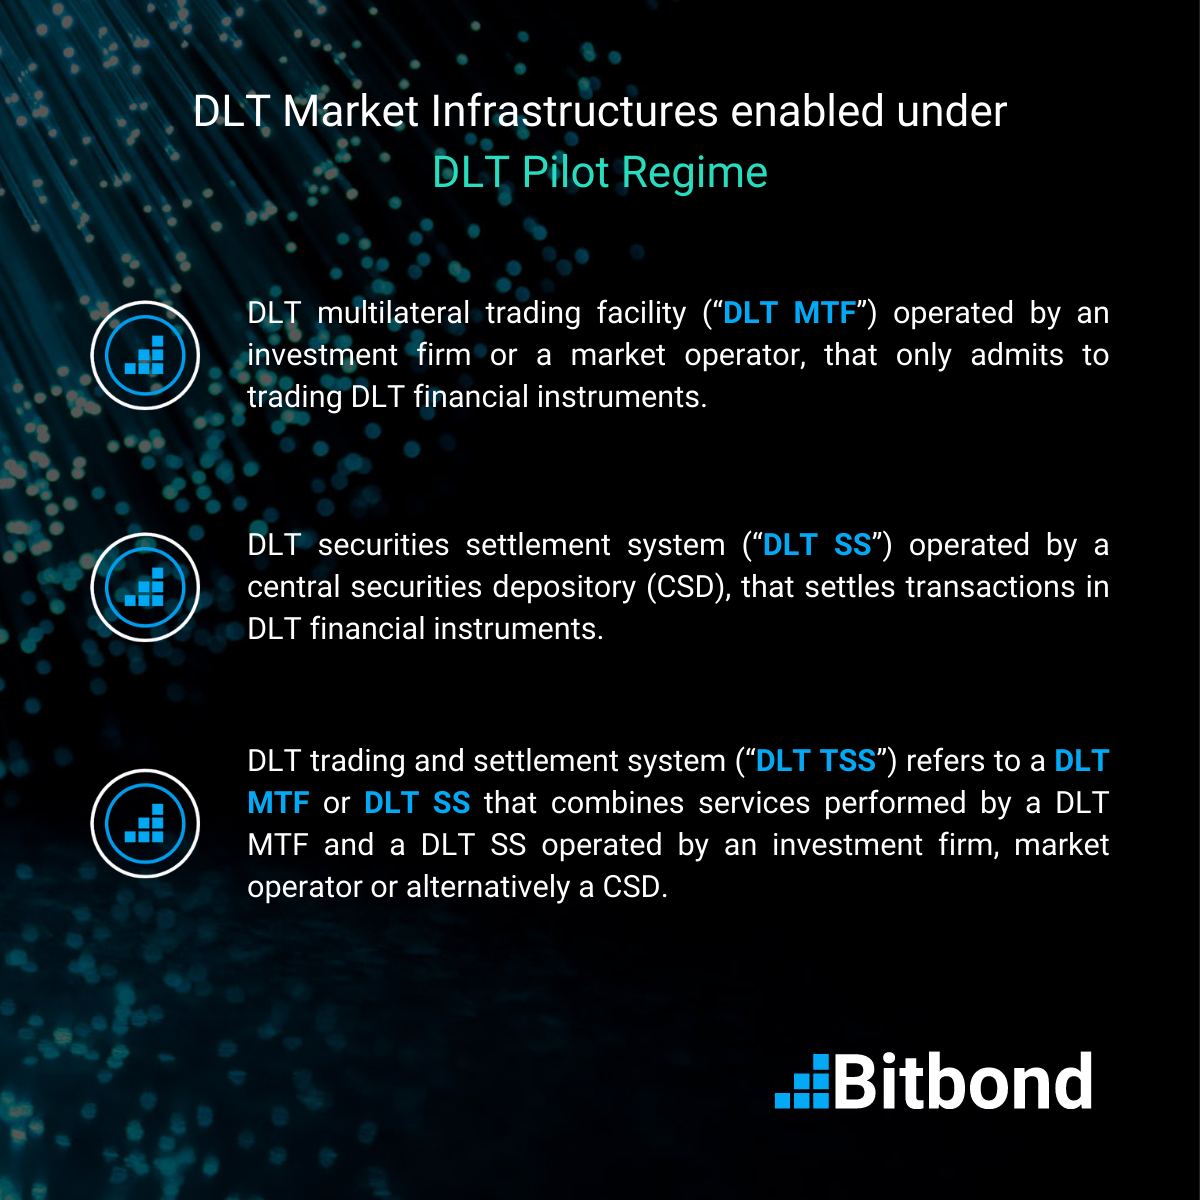 Different DLT Market Infrastructures enabled under the DLT Pilot Regime